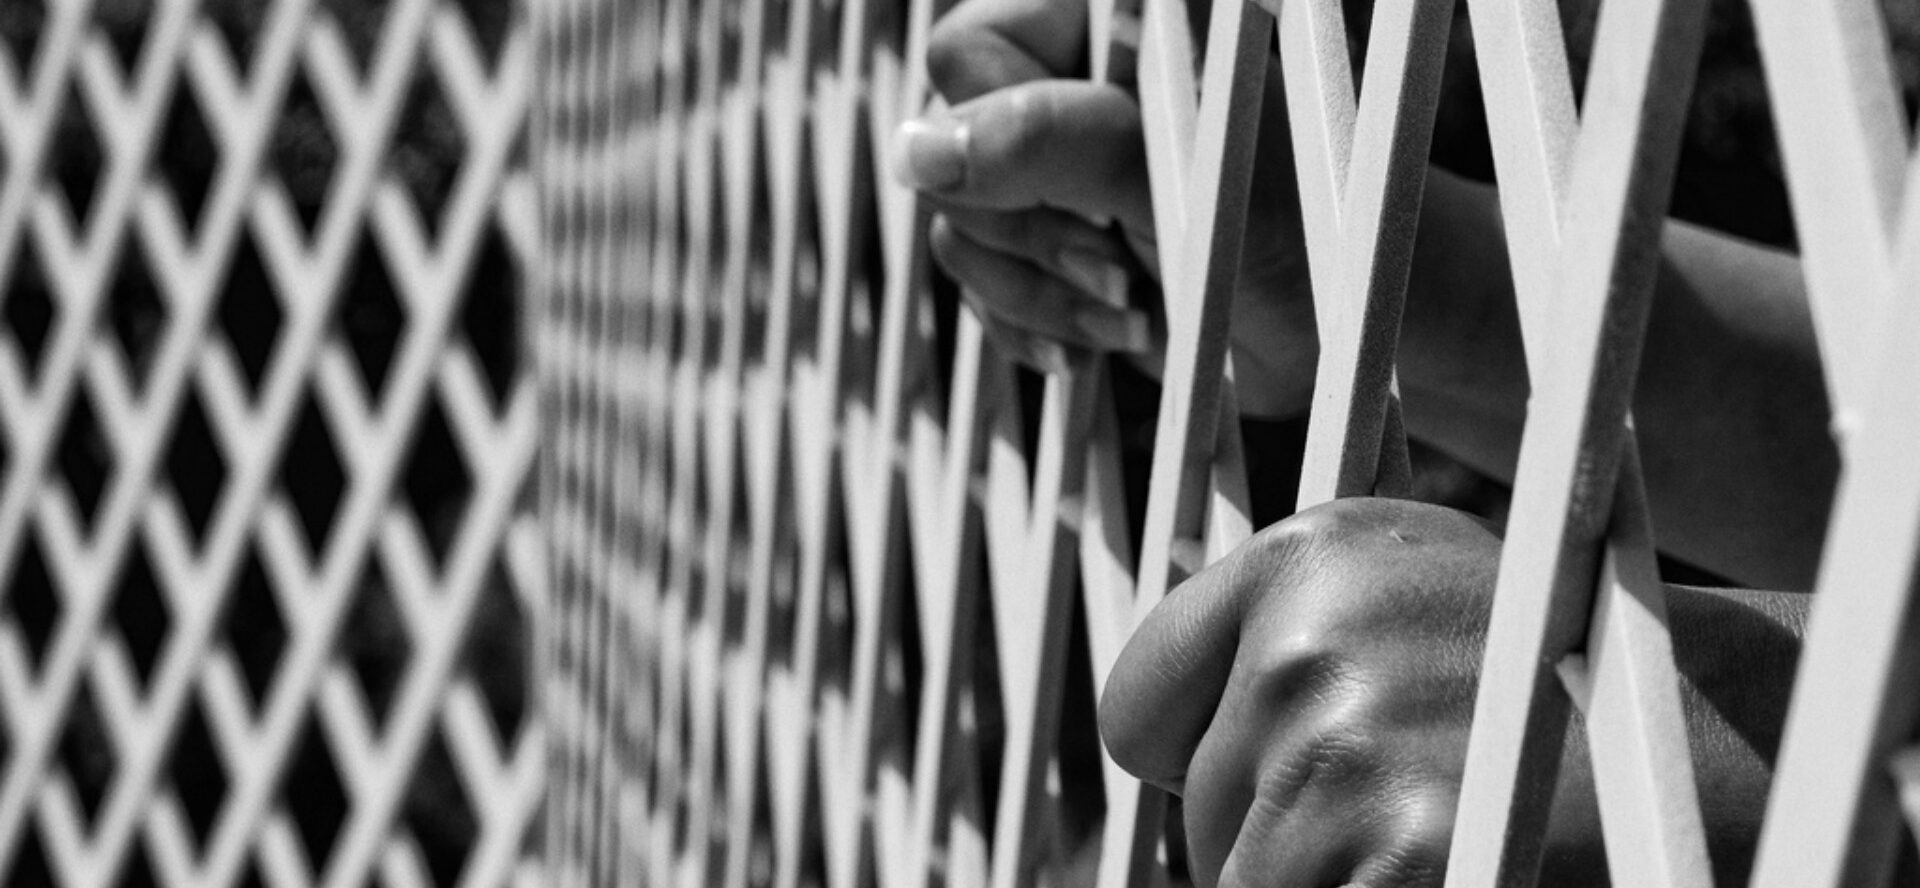 Le Ghana pourrait remplacer la peine capitale par la réclusion à perpétuité  | © Illustration:Tiago Pinheiro/Flickr/CC BY-NC-ND 2.0